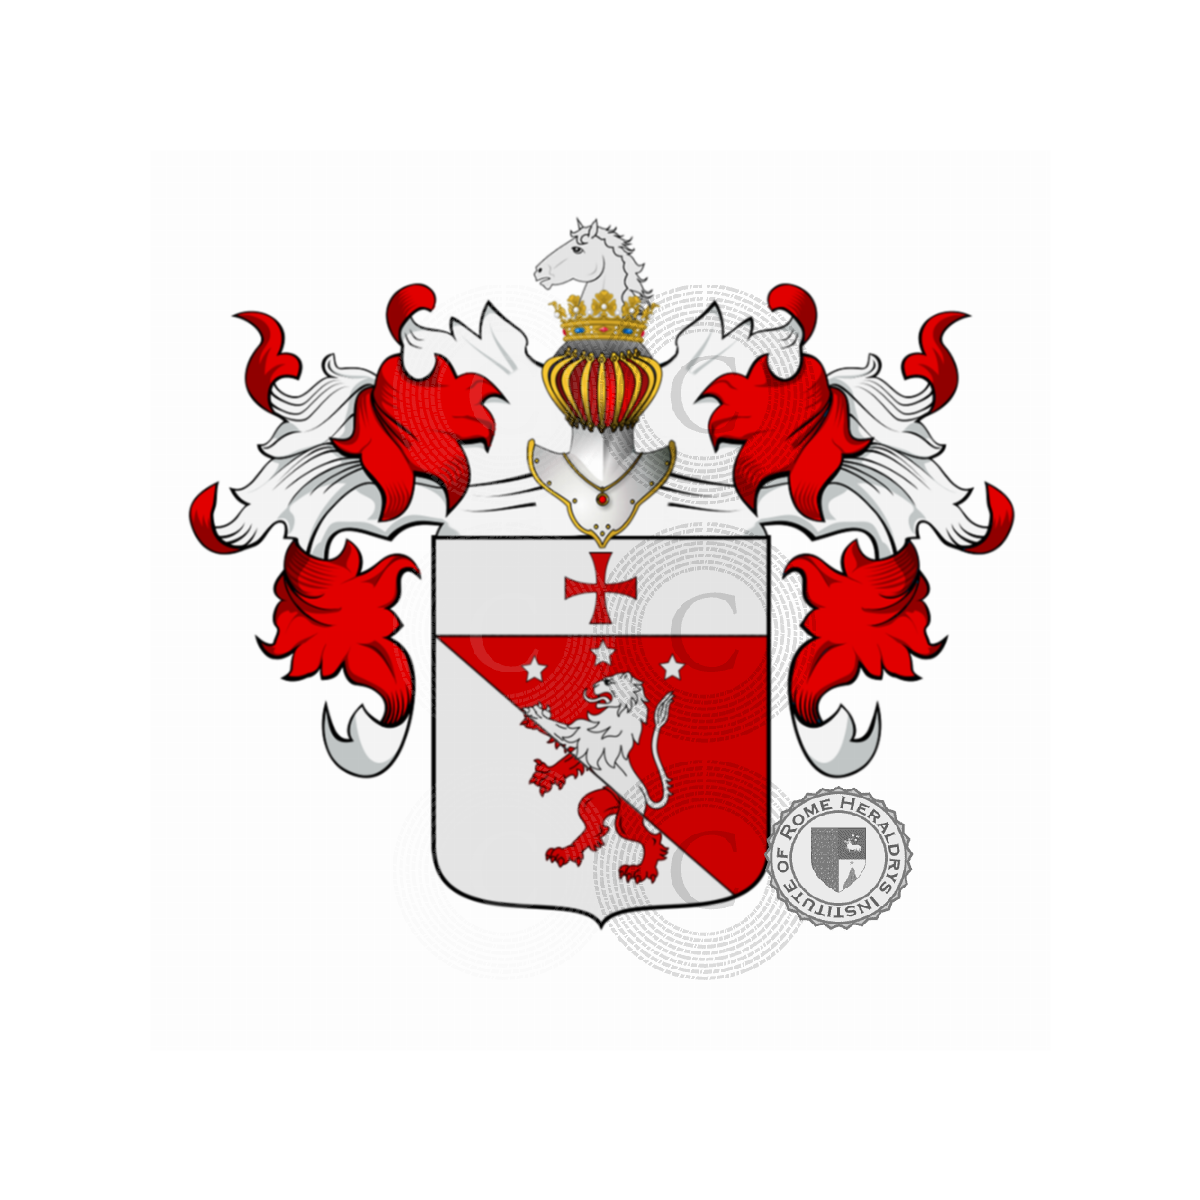 Escudo de la familiaAdelardi, Bulgari, Marcheselli o Marchesiello, Bulgari,Marcheselli,Marchesello,Marchesiello